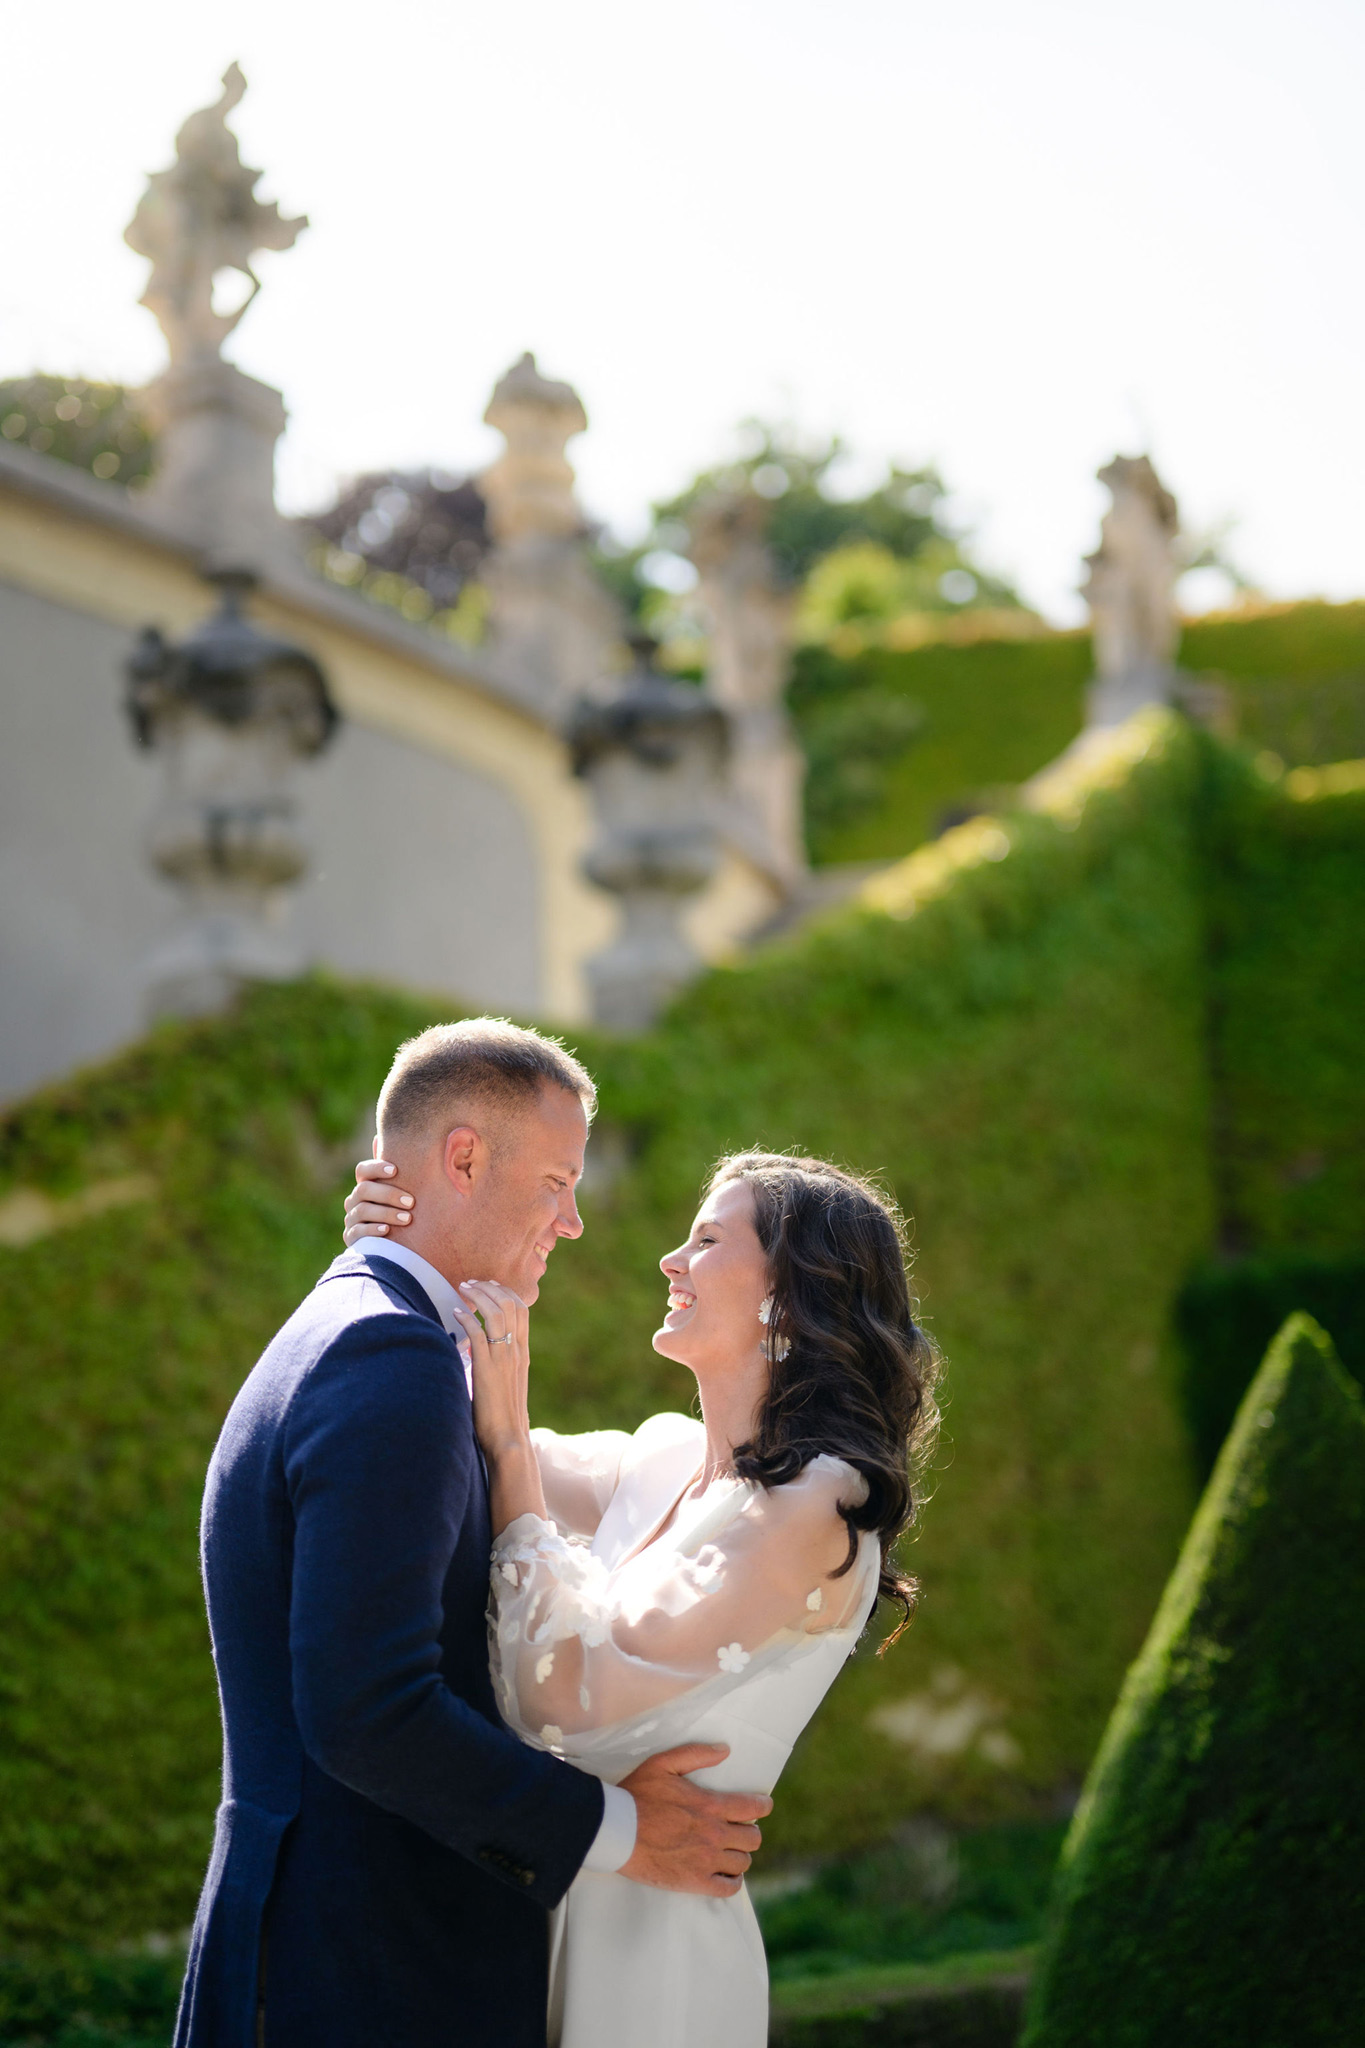 wedding portrait at Vrtba garden Prague 